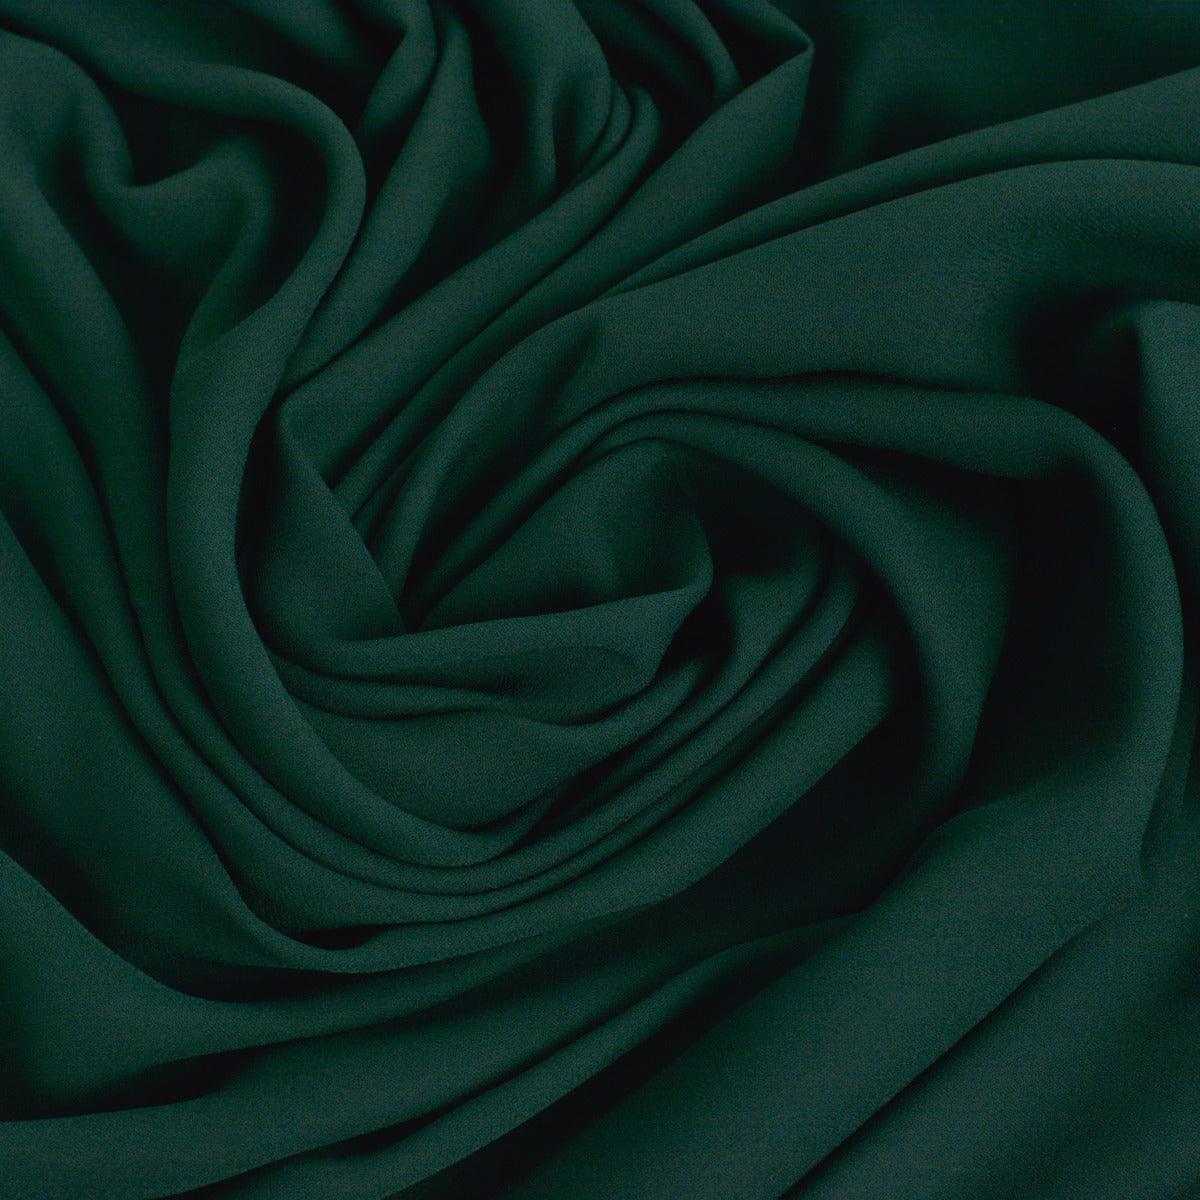 Voal Georgette - Verde Smarald Inchis folosit la fabricarea rochiilor